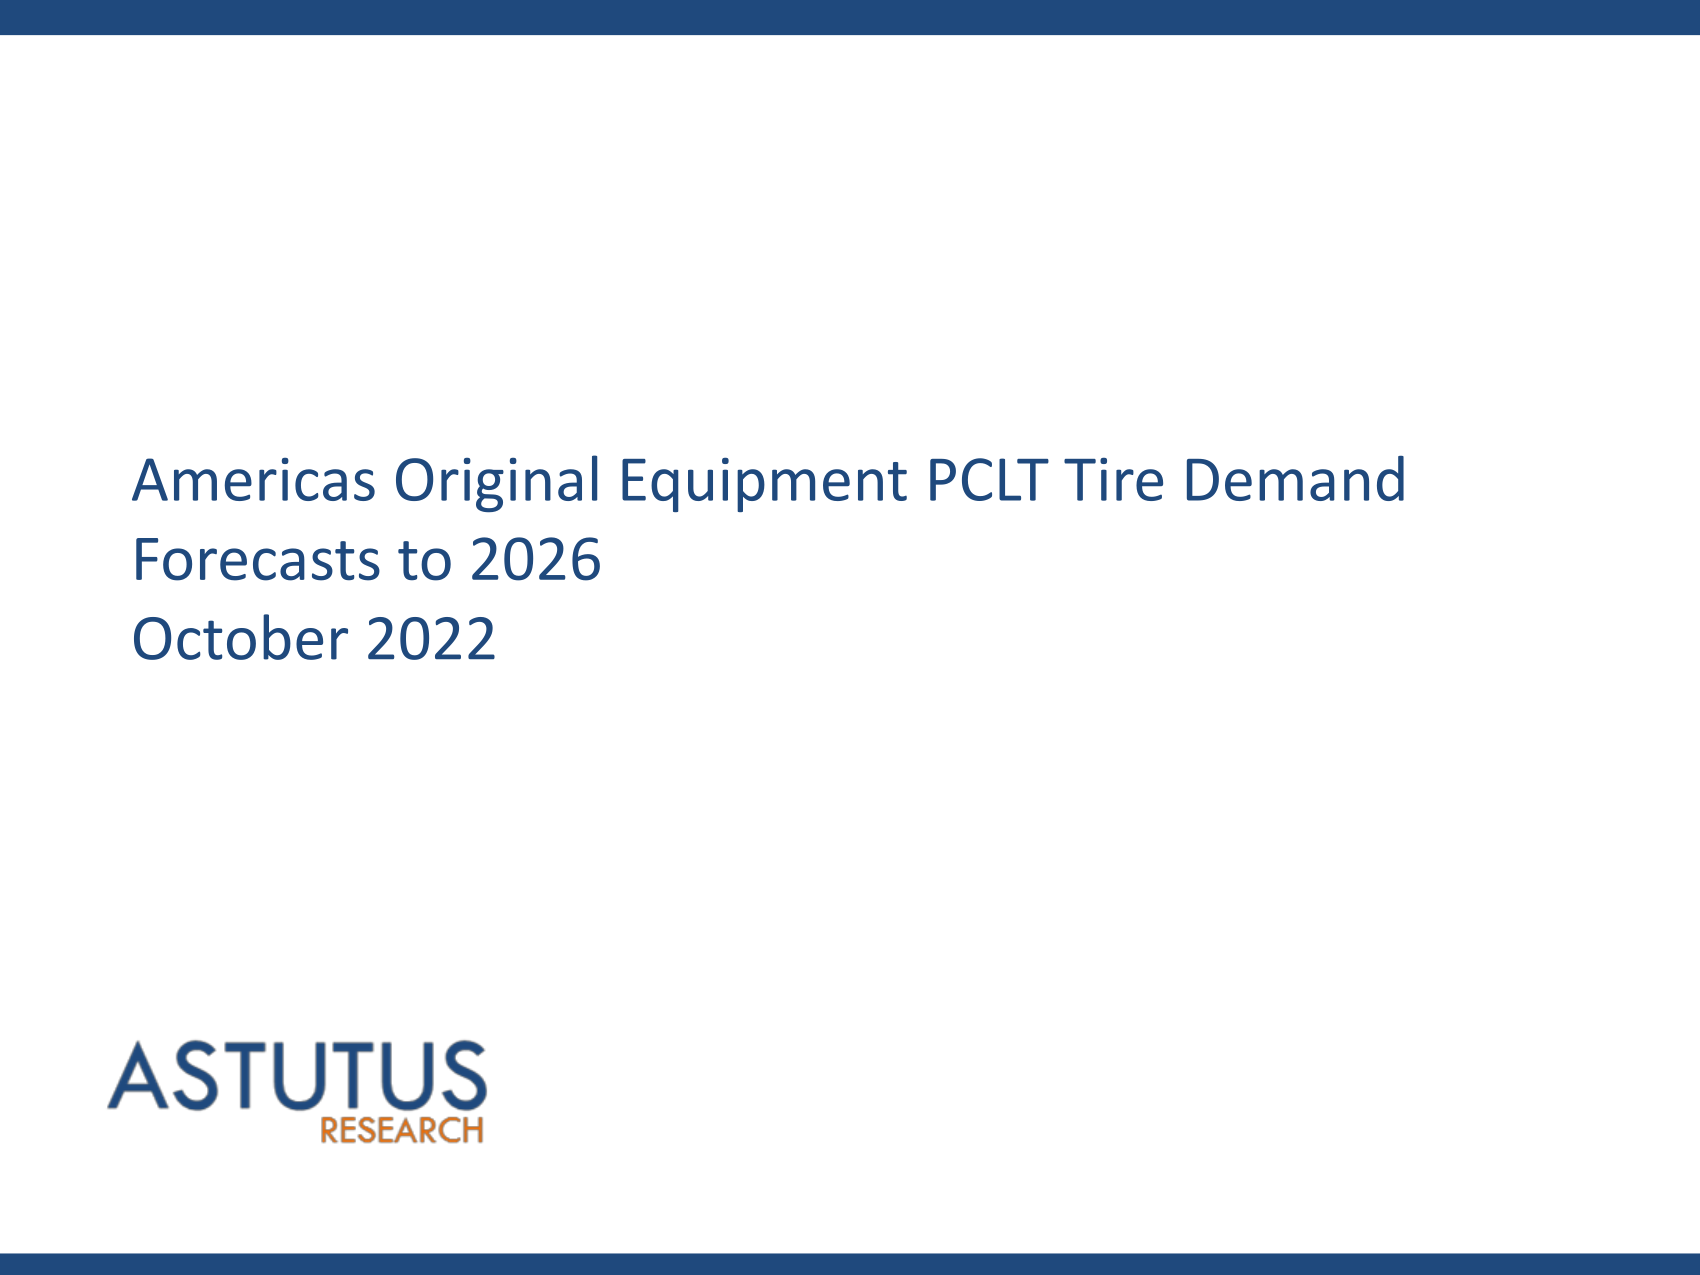 Americas Original Equipment PCLT Tire Market Forecasts to 2026